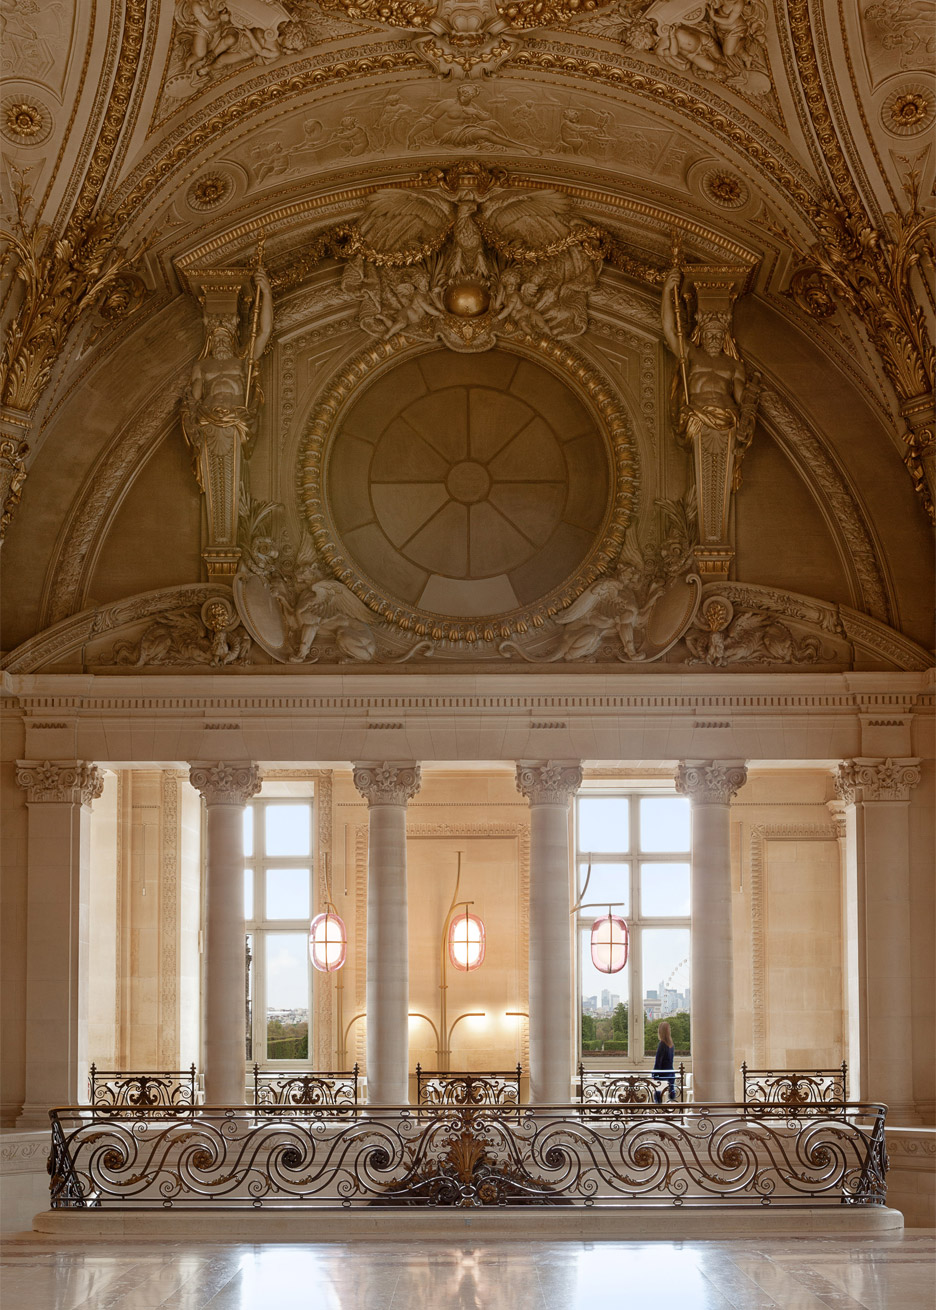 Café Mollien at the Louvre by Mathieu Lehanneur